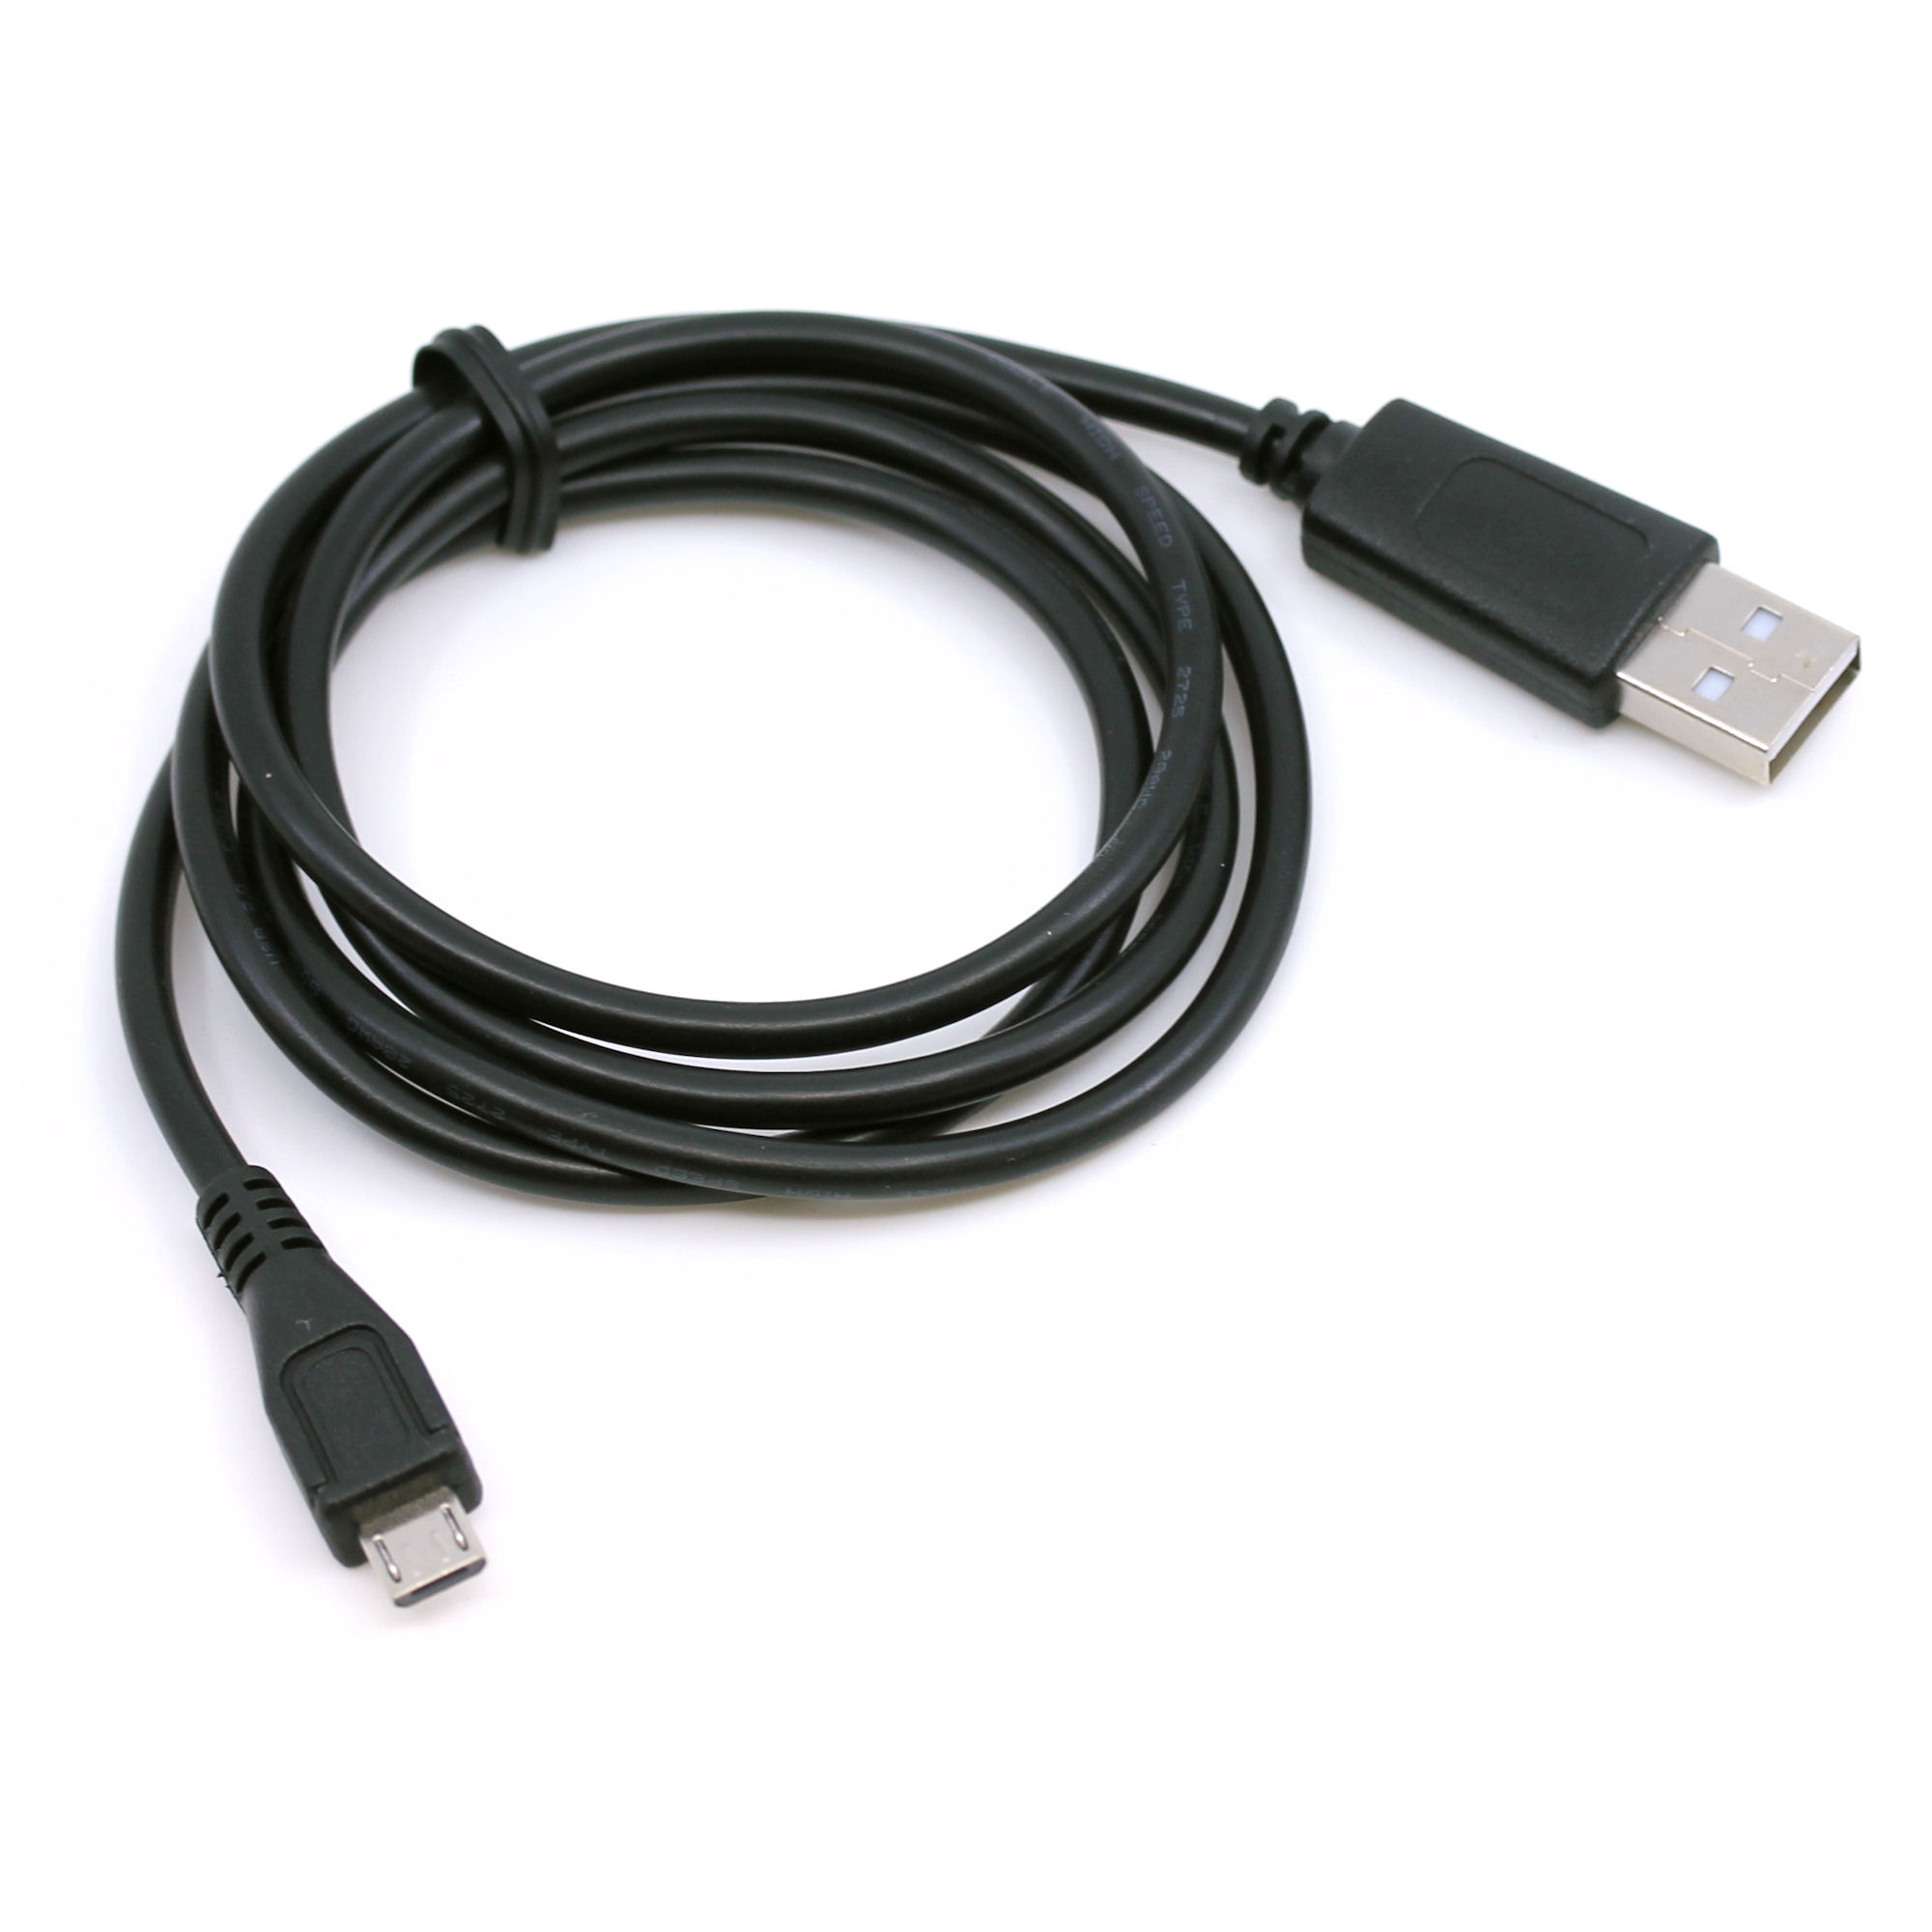 USB Daten-/Ladekabel für Tolino Vision 4 HD, Page, Vision 3 HD, Shine 2 HD, Vision 2, Vision, Epos